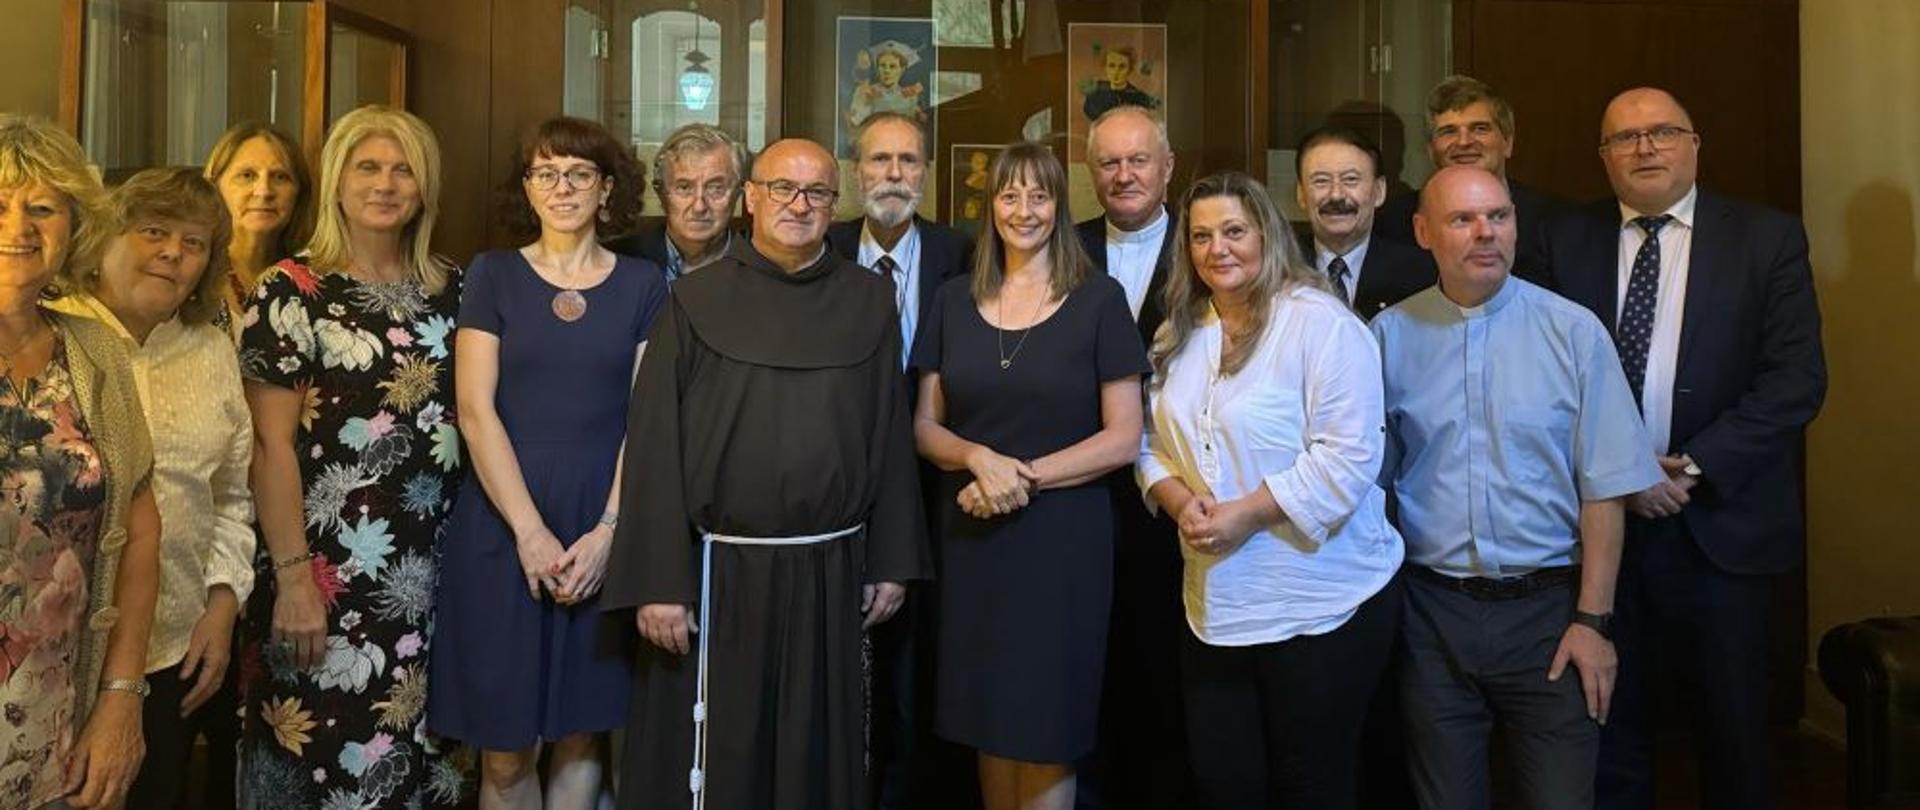 Representantes de la Universidad Católica de Lublin presentaron el programa universitario en Buenos Aires.